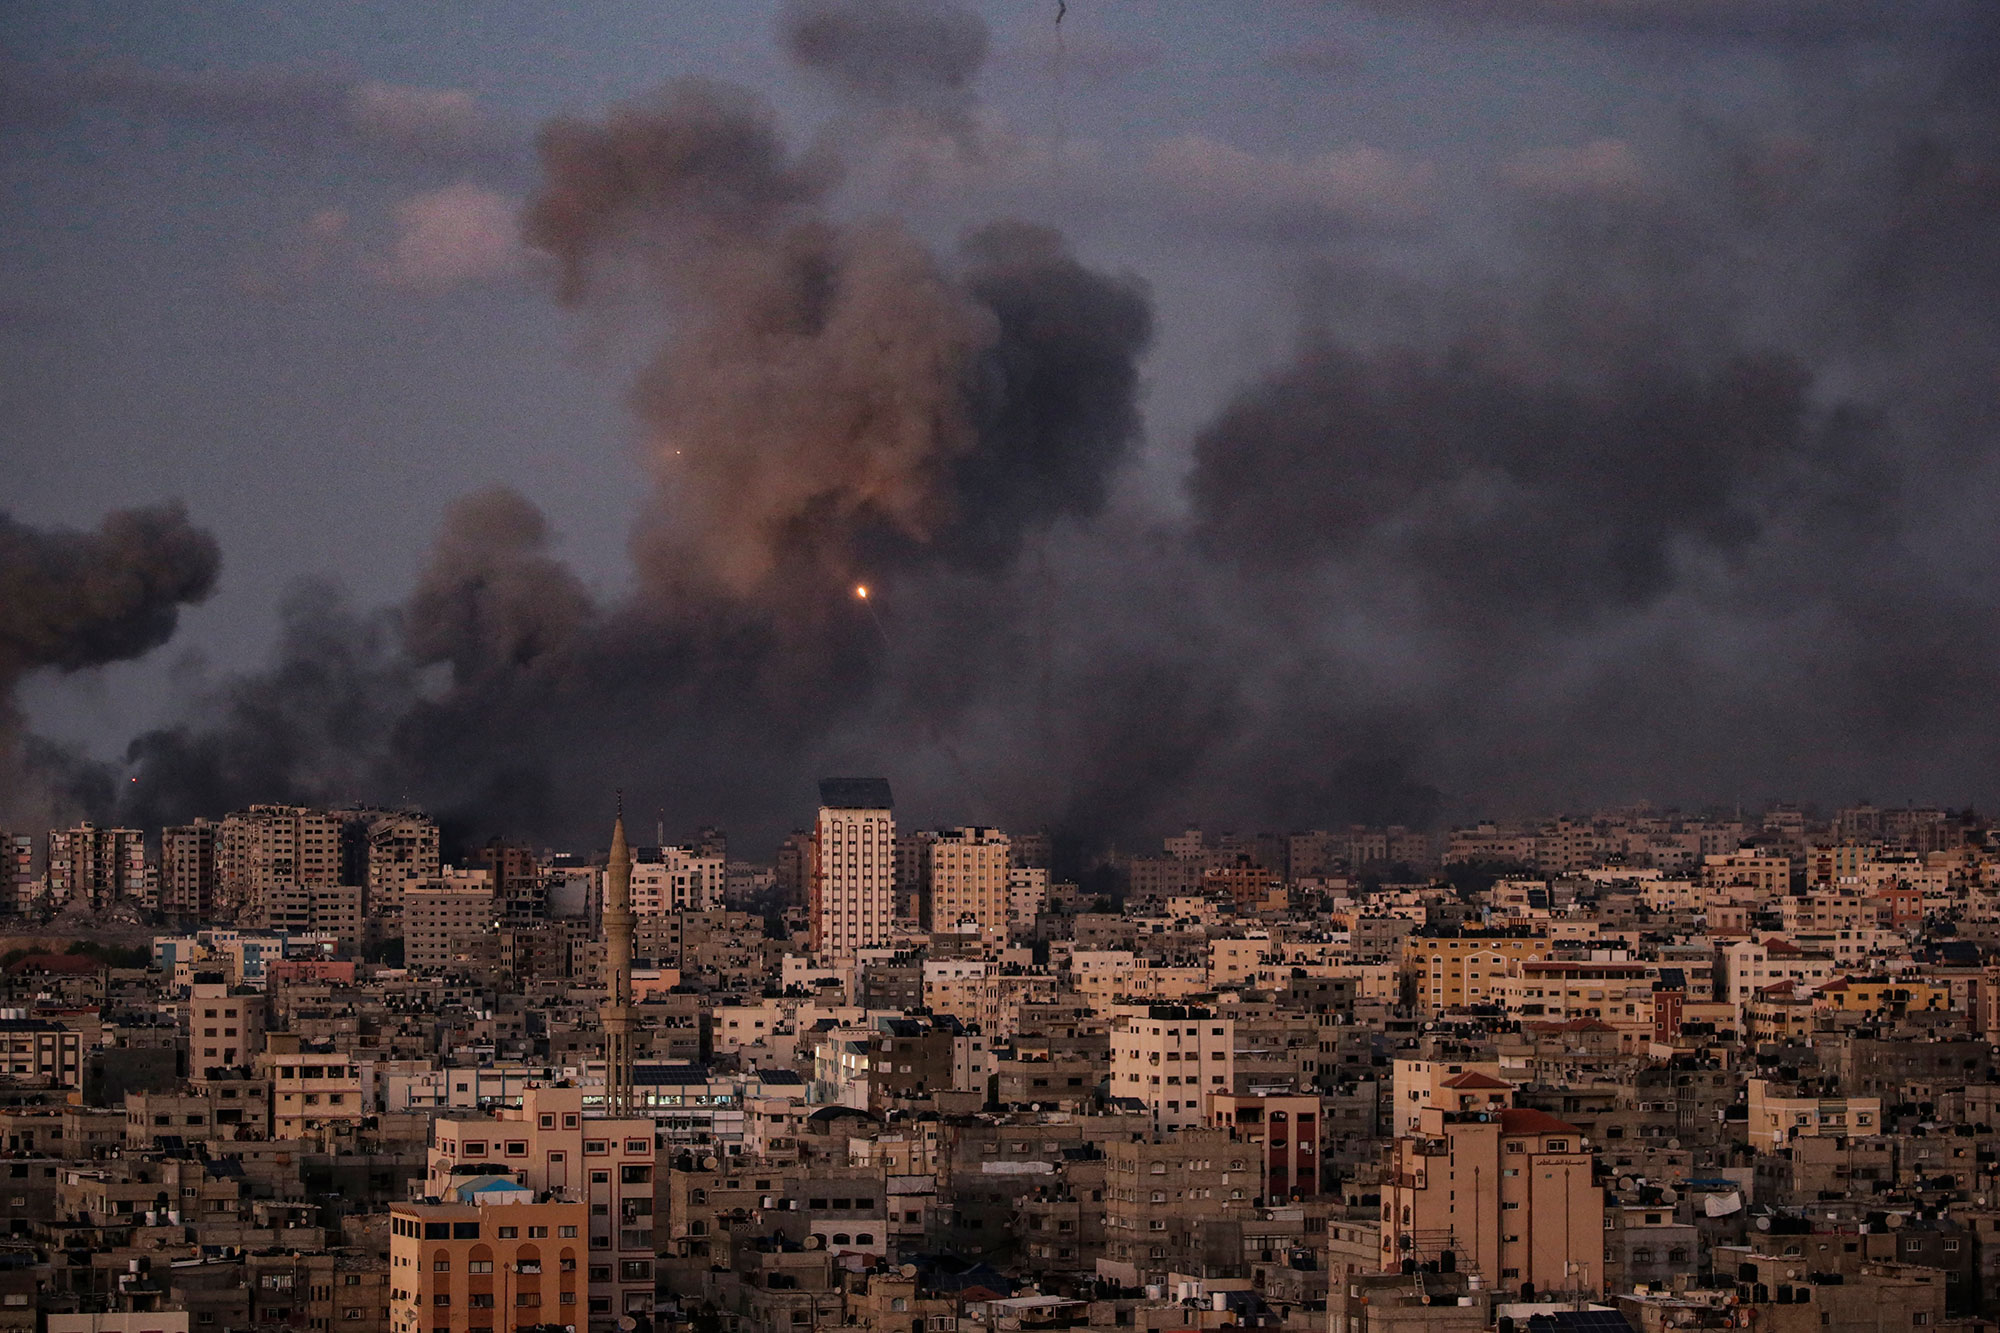 وزارة الصحة في غزة تعلن ارتفاع حصيلة القصف الإسرائيلي إلى 1900 قتيل بينهم 614 طفلاً